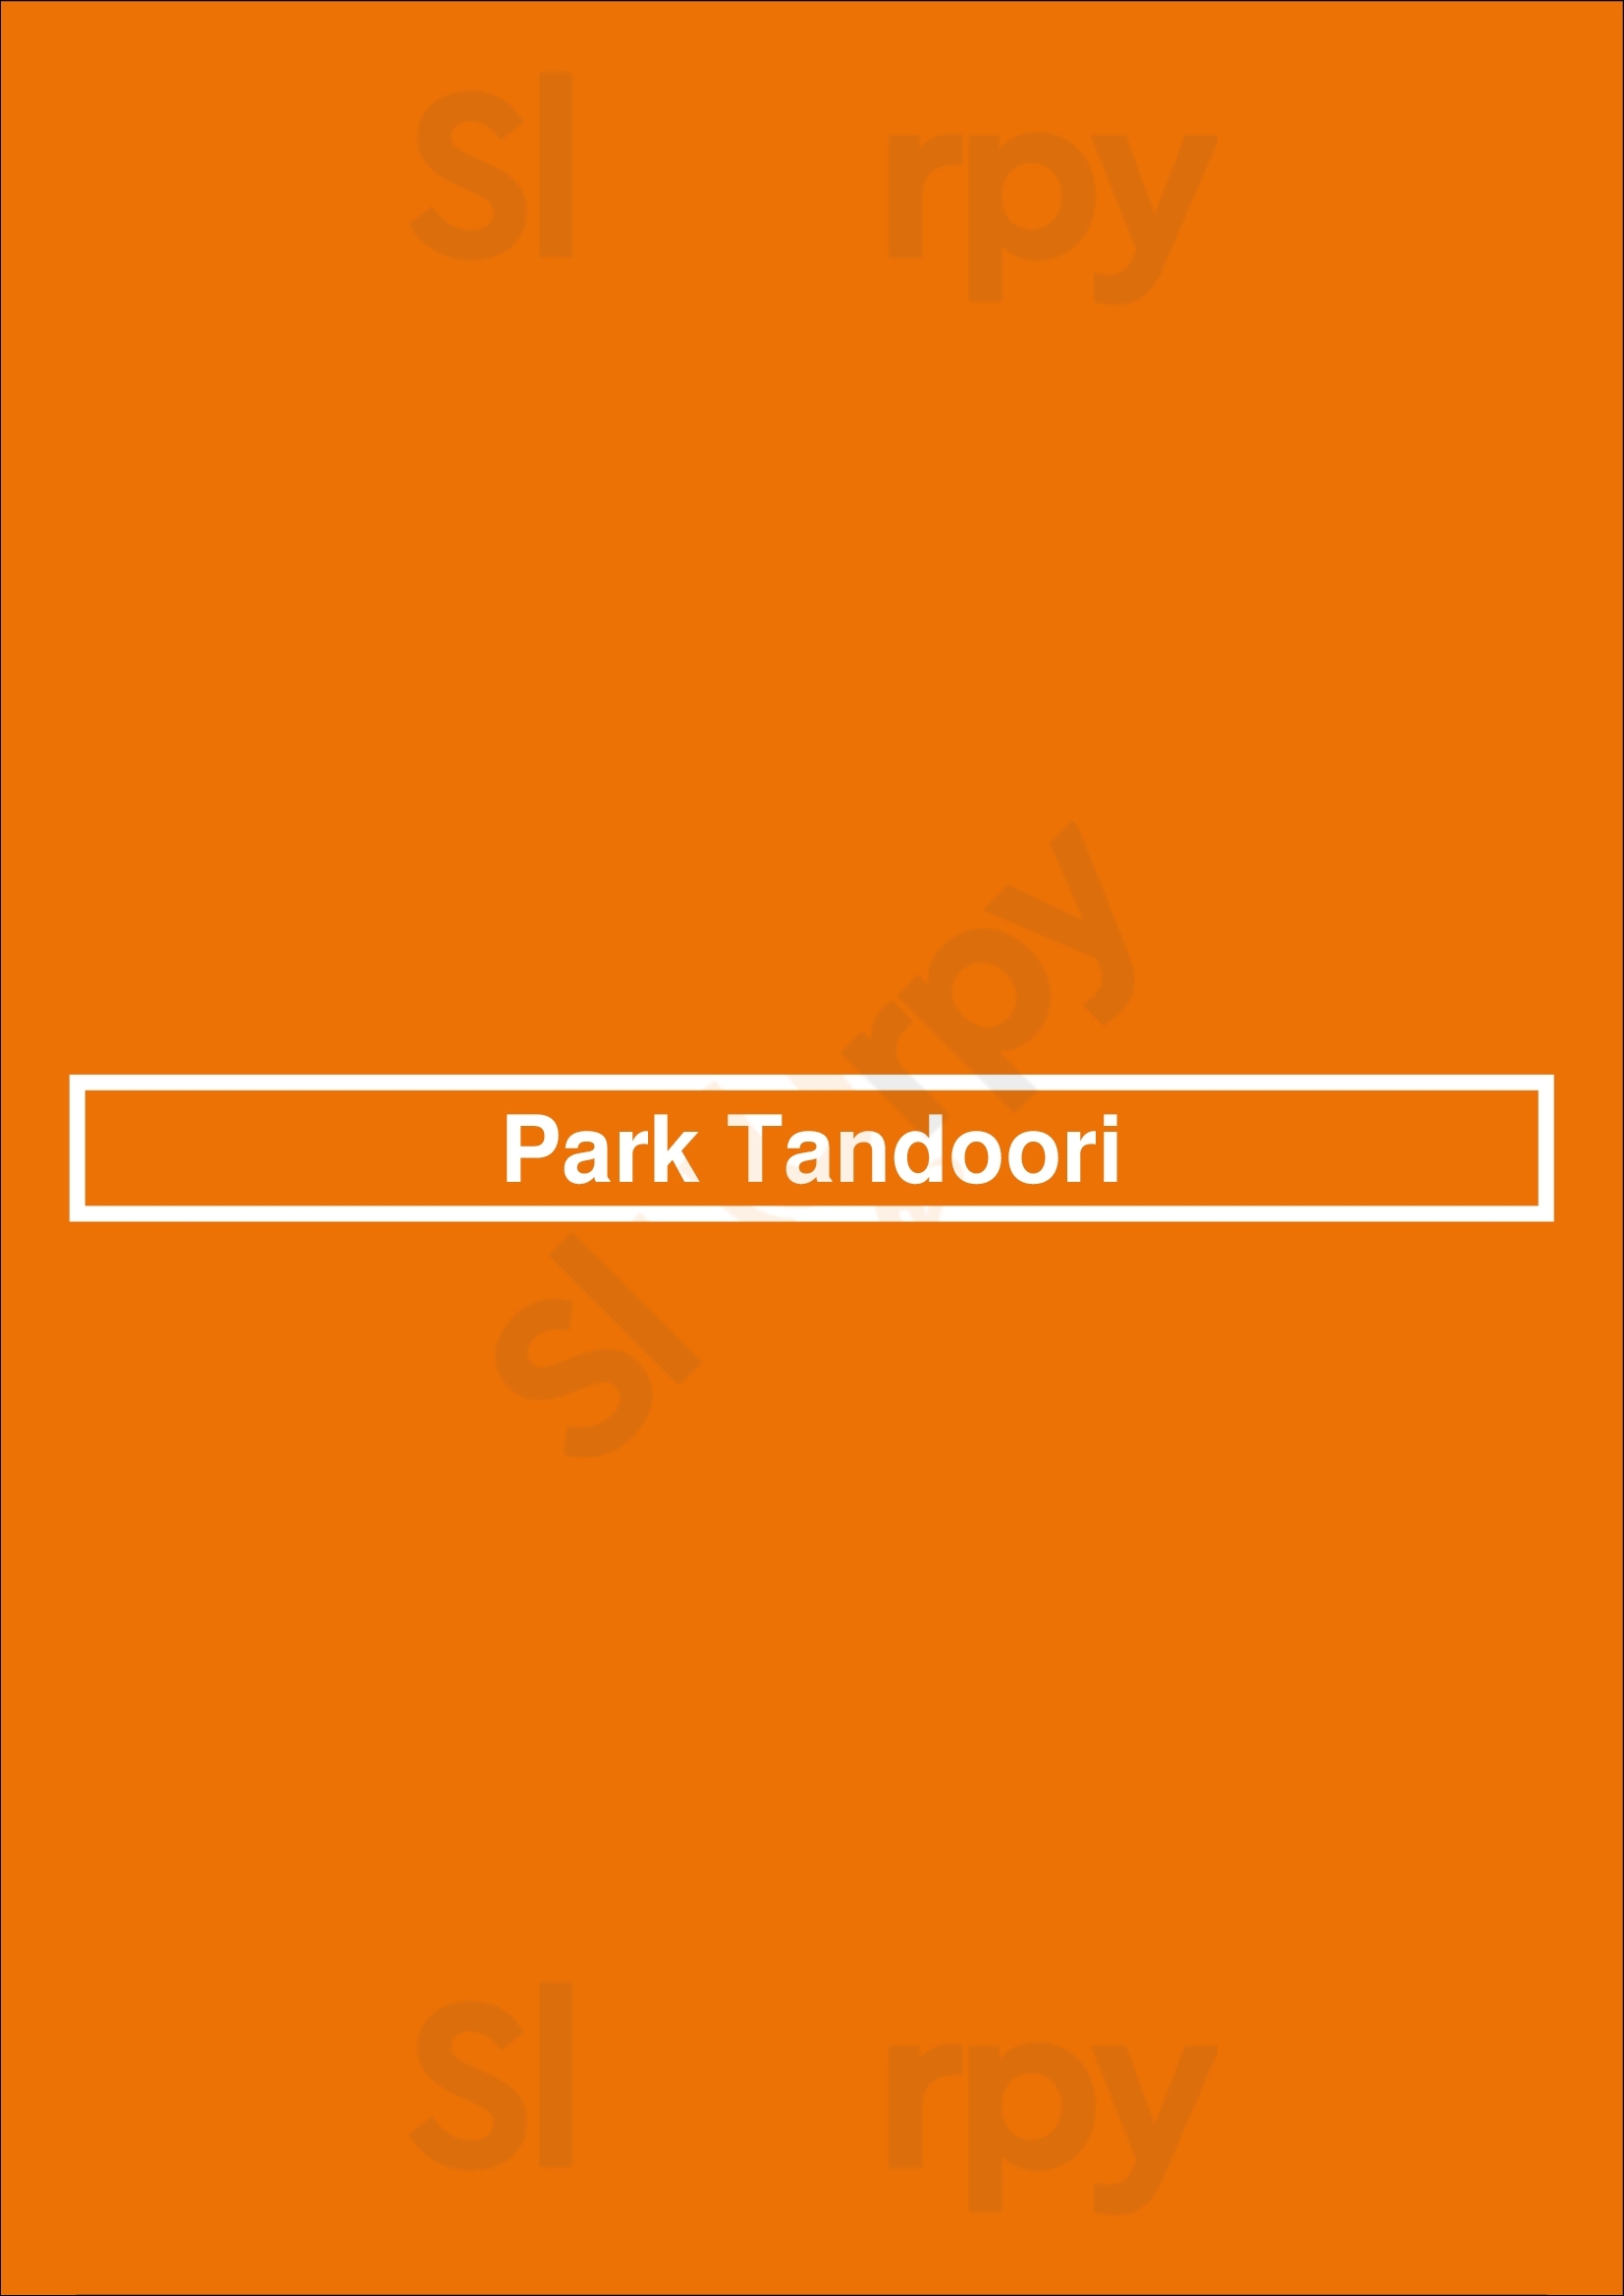 Park Tandoori Nottingham Menu - 1